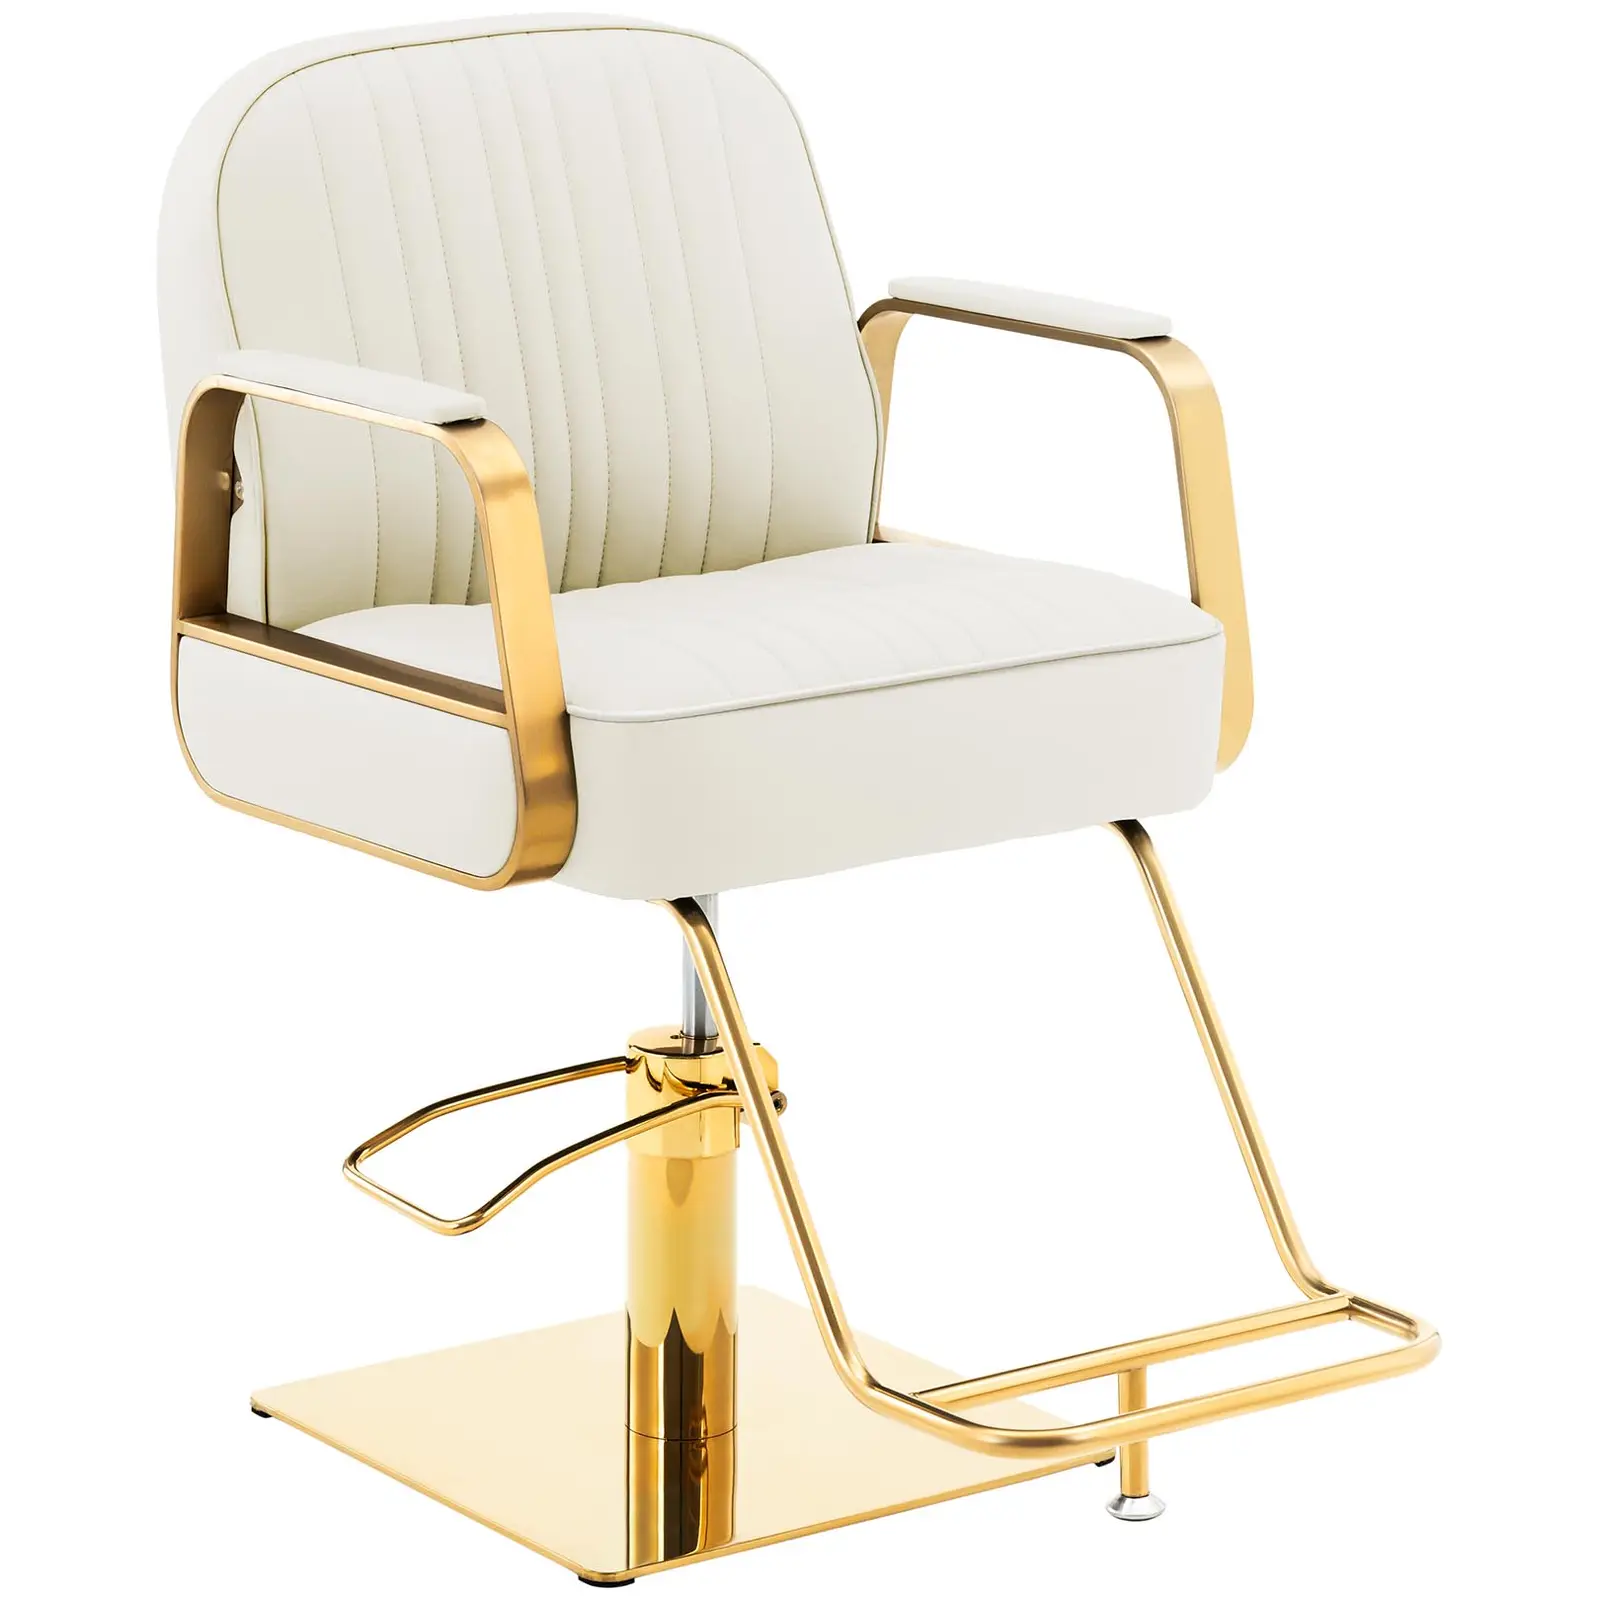 Fodrász szék lábtartóval - 920–1070 mm - max. 200 kg - krém / arany